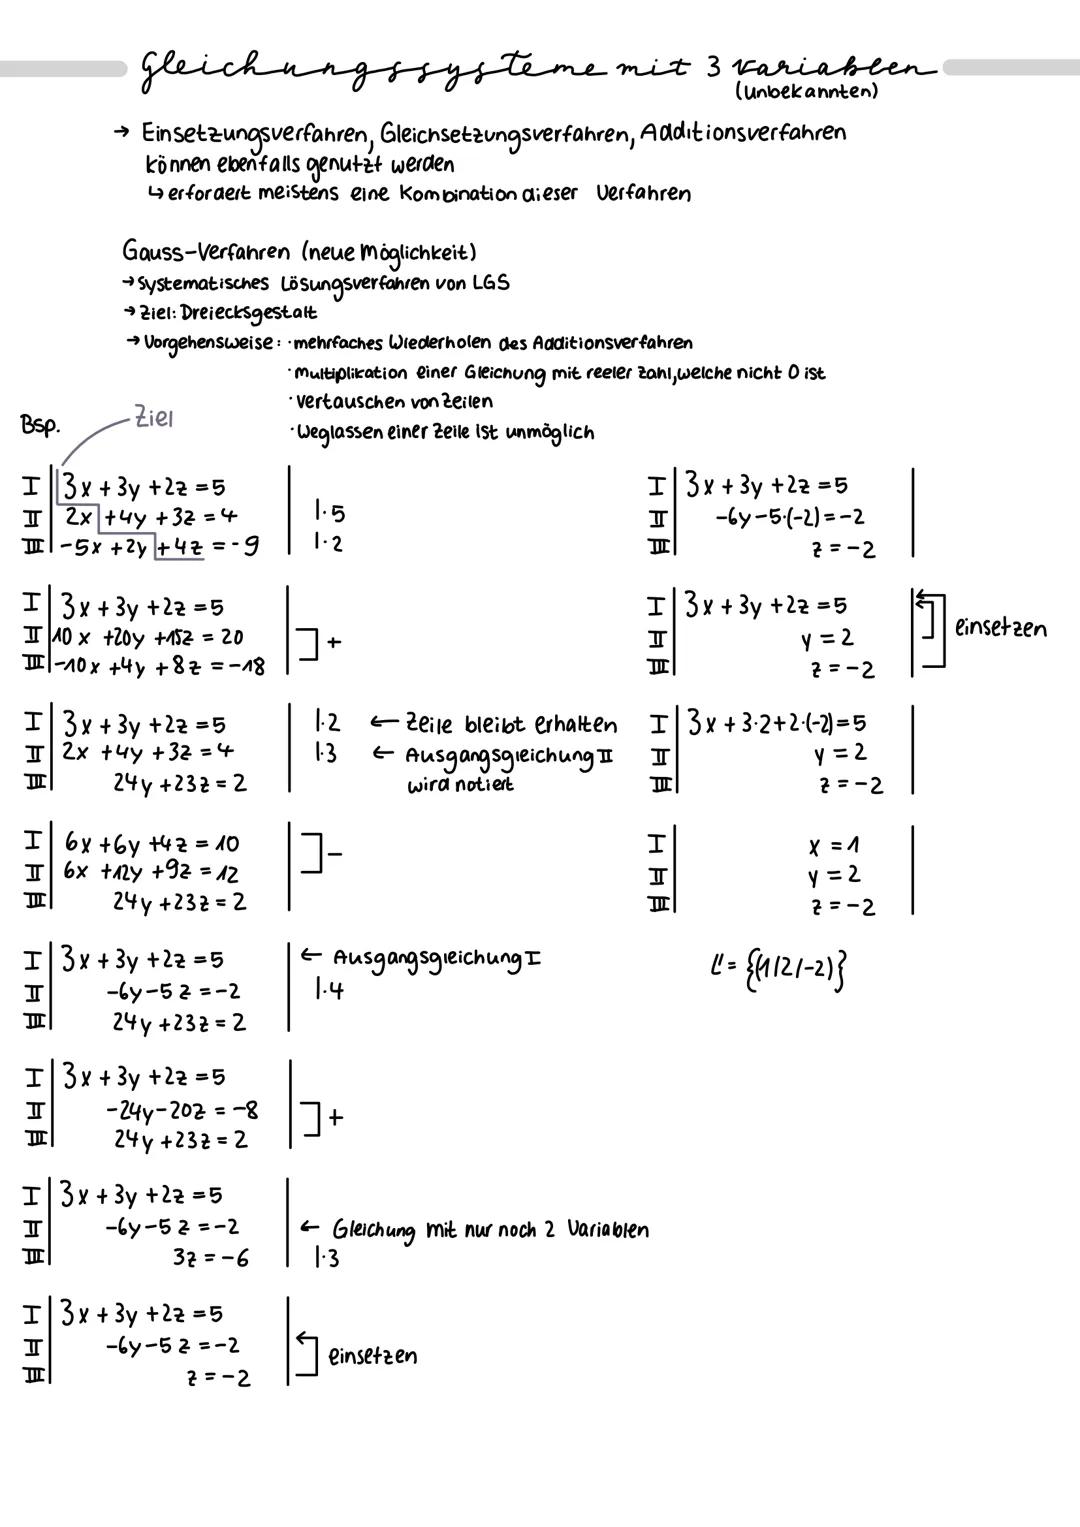 Lineare Gleichungssysteme
Gleichungssysteme mit 2 variablen
(unbekannten)
Einsetzungsverfahren
Eine Gleichung wird nach
einer Variable umgef